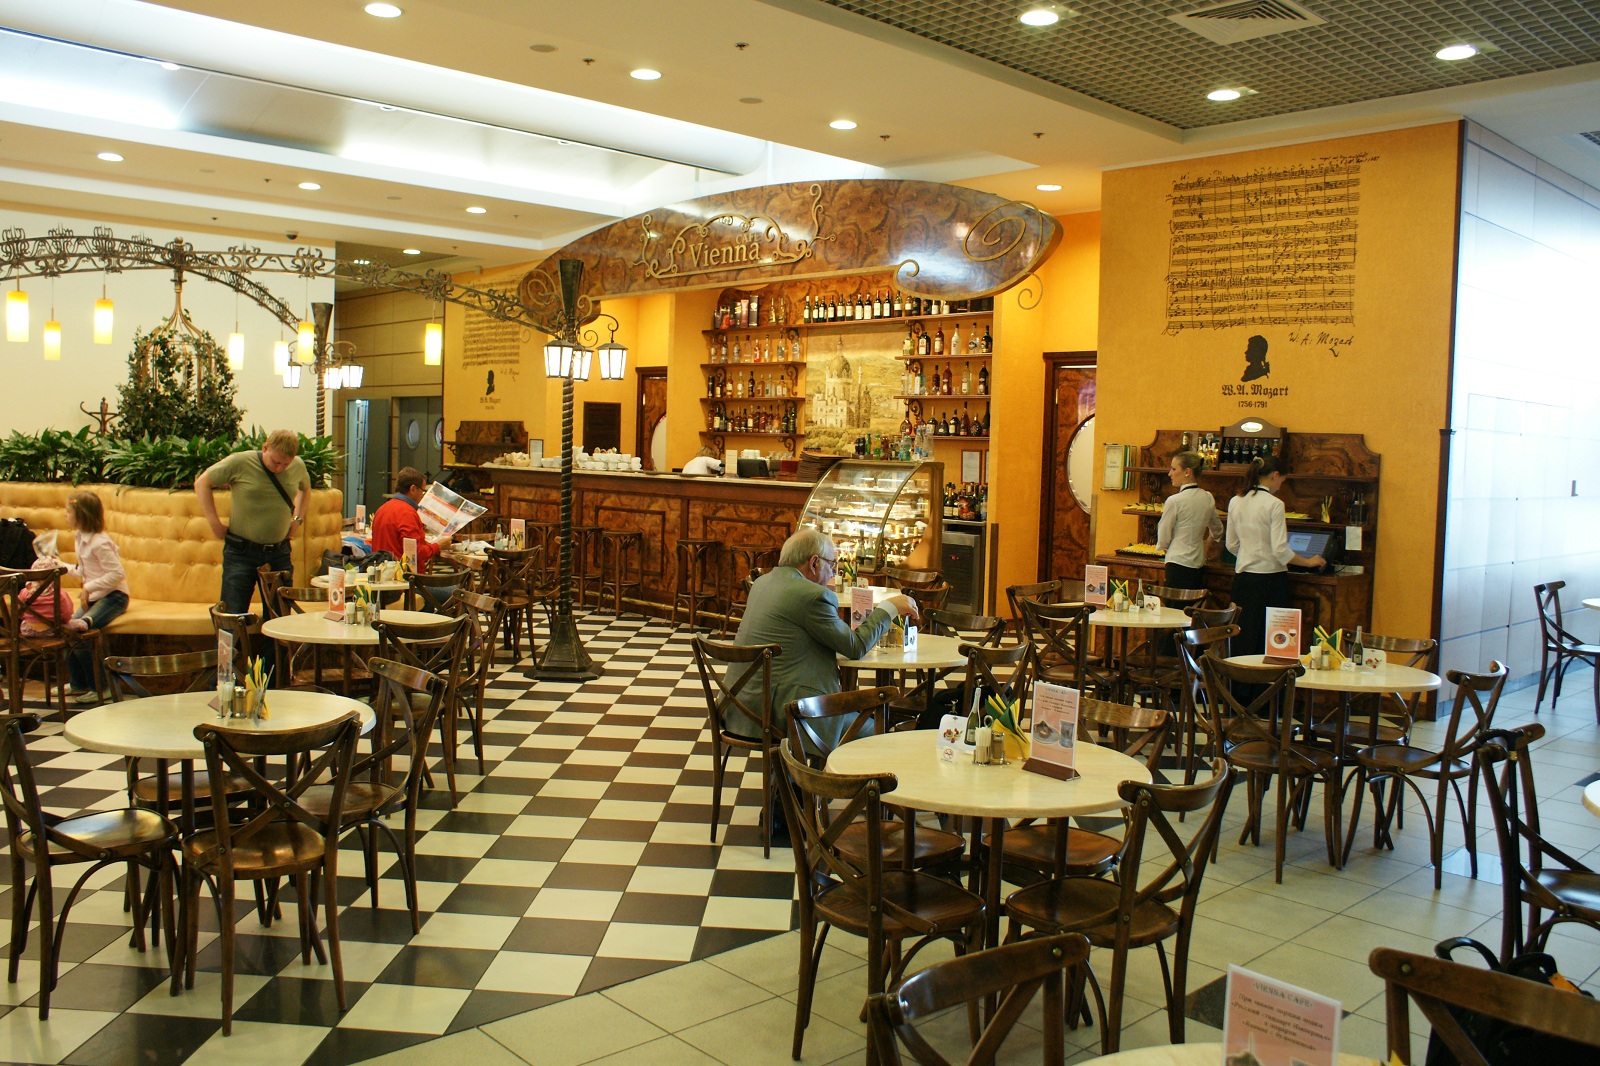  Vienna cafe